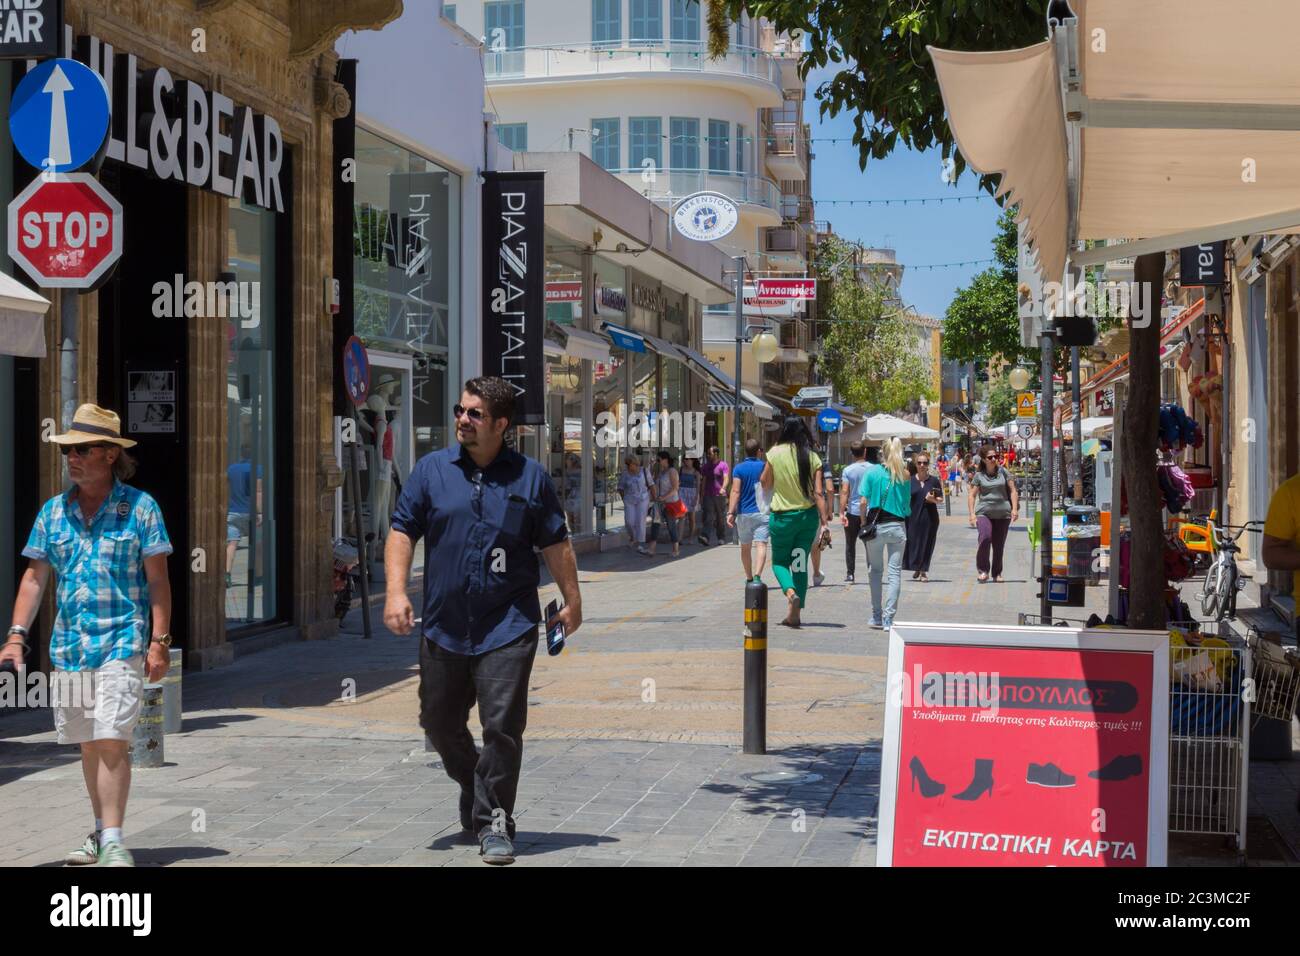 Strada tipica di Nicosia con molti bar e ristoranti. Nicosia, Cipro, 22 giugno 2015. Foto Stock